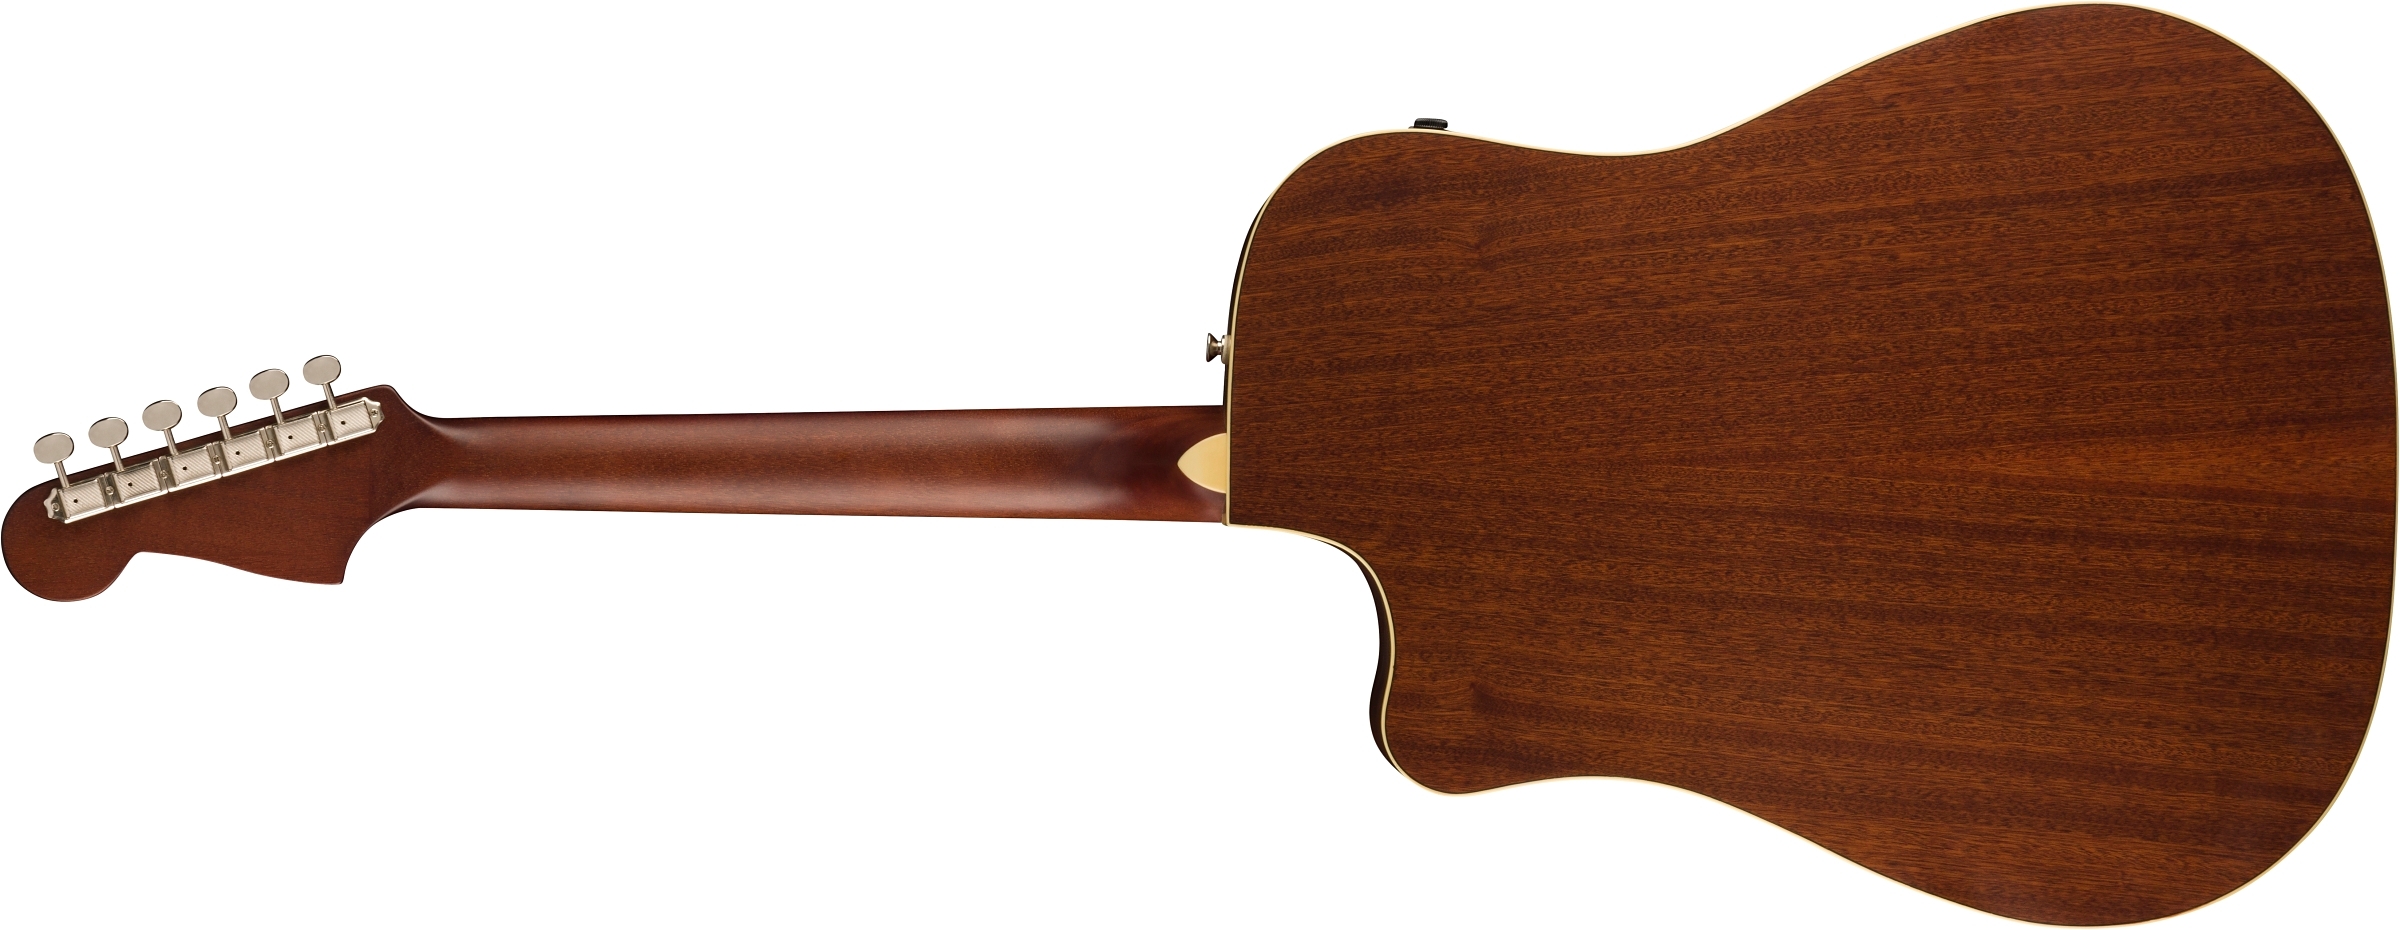 Gewa Capodastre F&S Clamp Style Guitare classique 529184 – FOTELEC